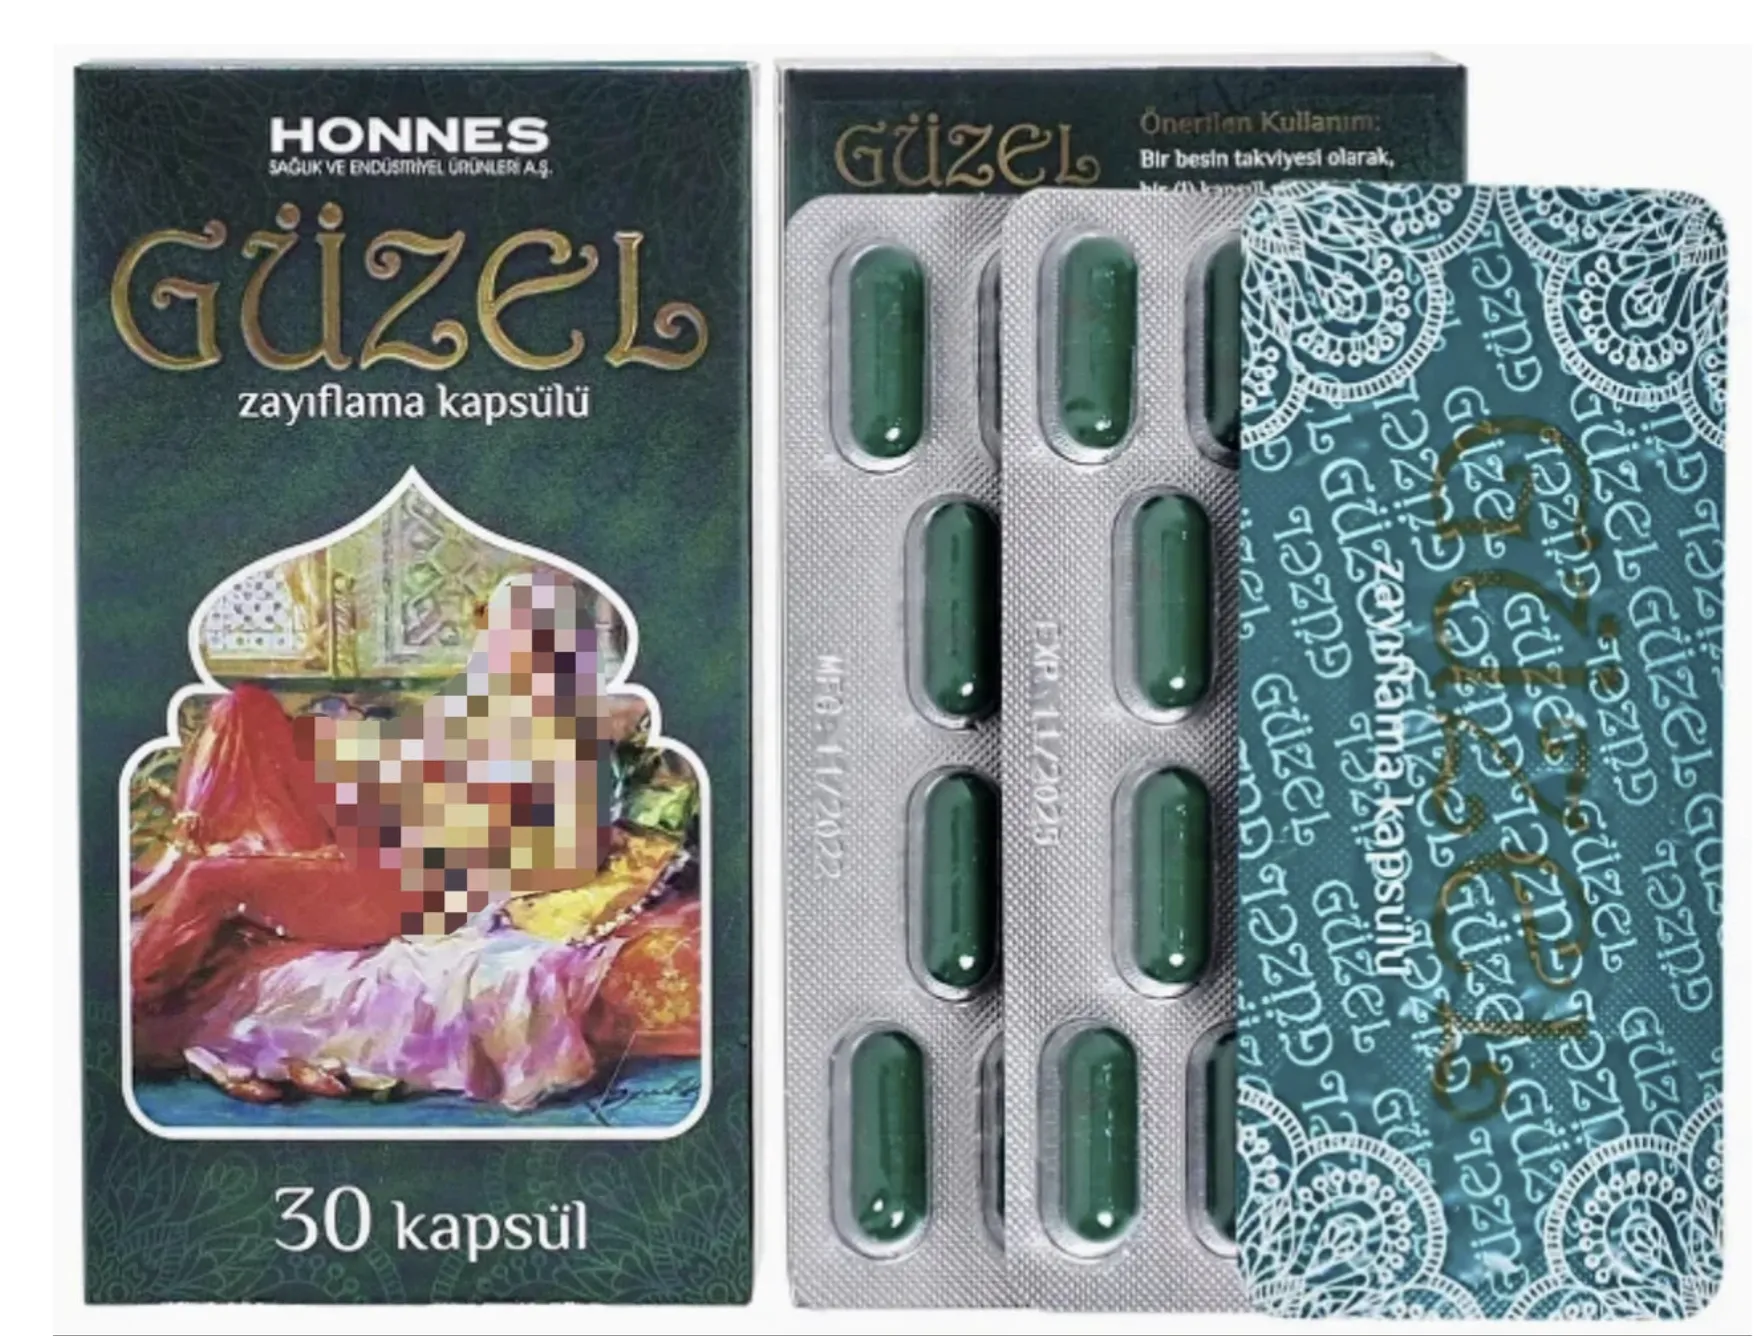 Guzel - Турция капсулы для похудения 30 капсул (Натуральные)#7